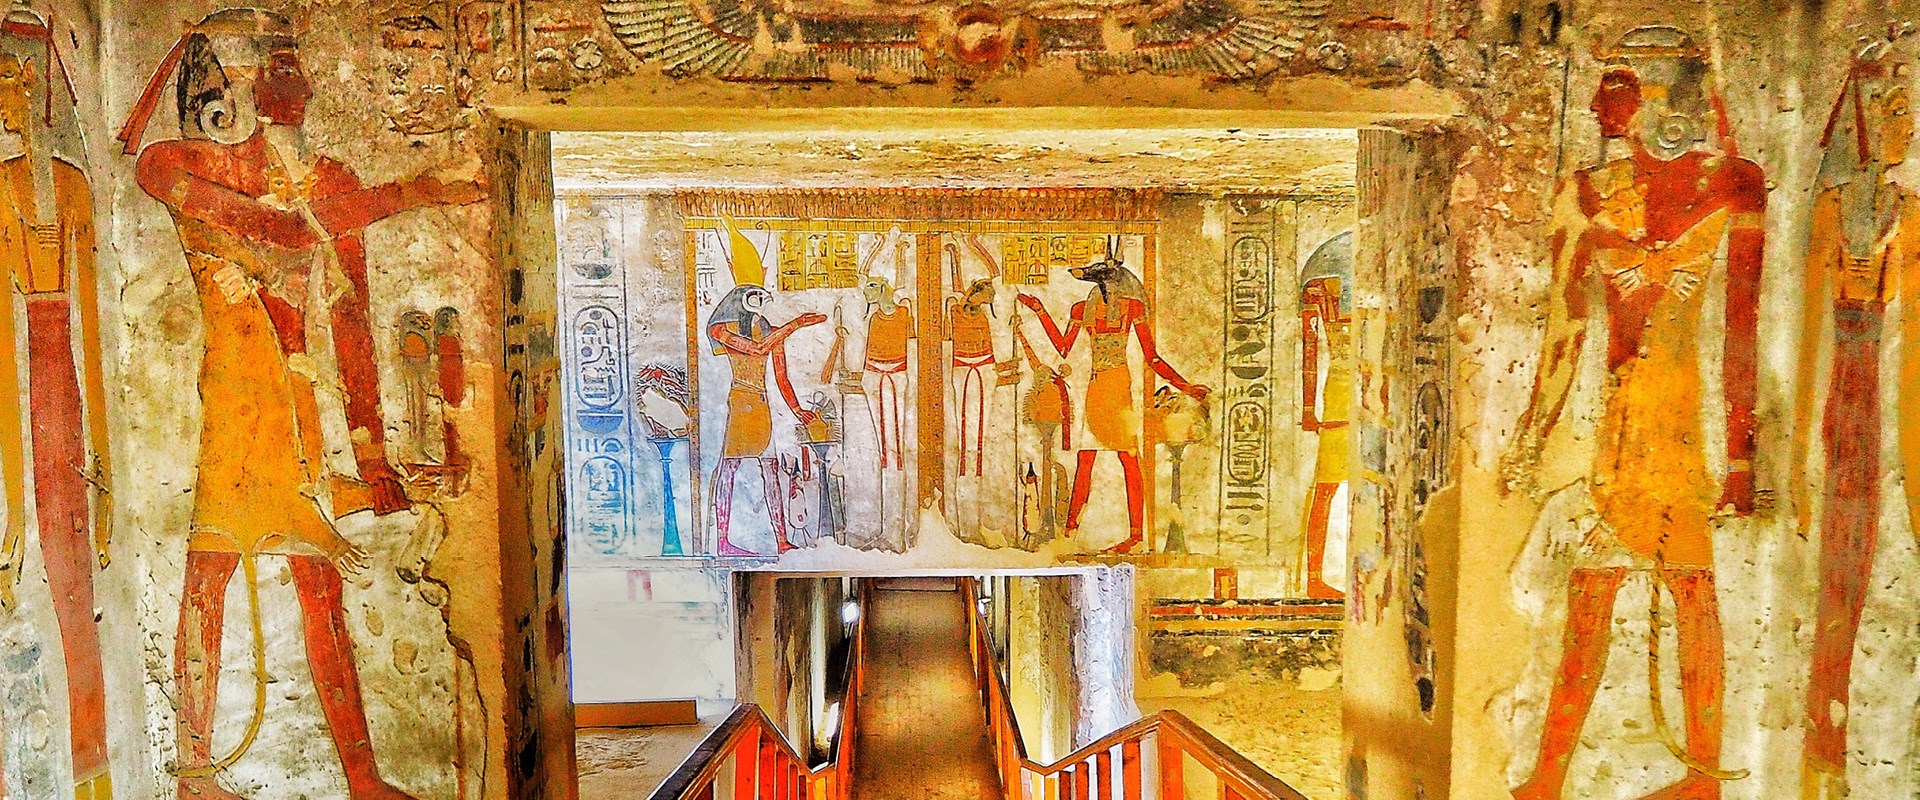 Splendours of Egypt   the Nile